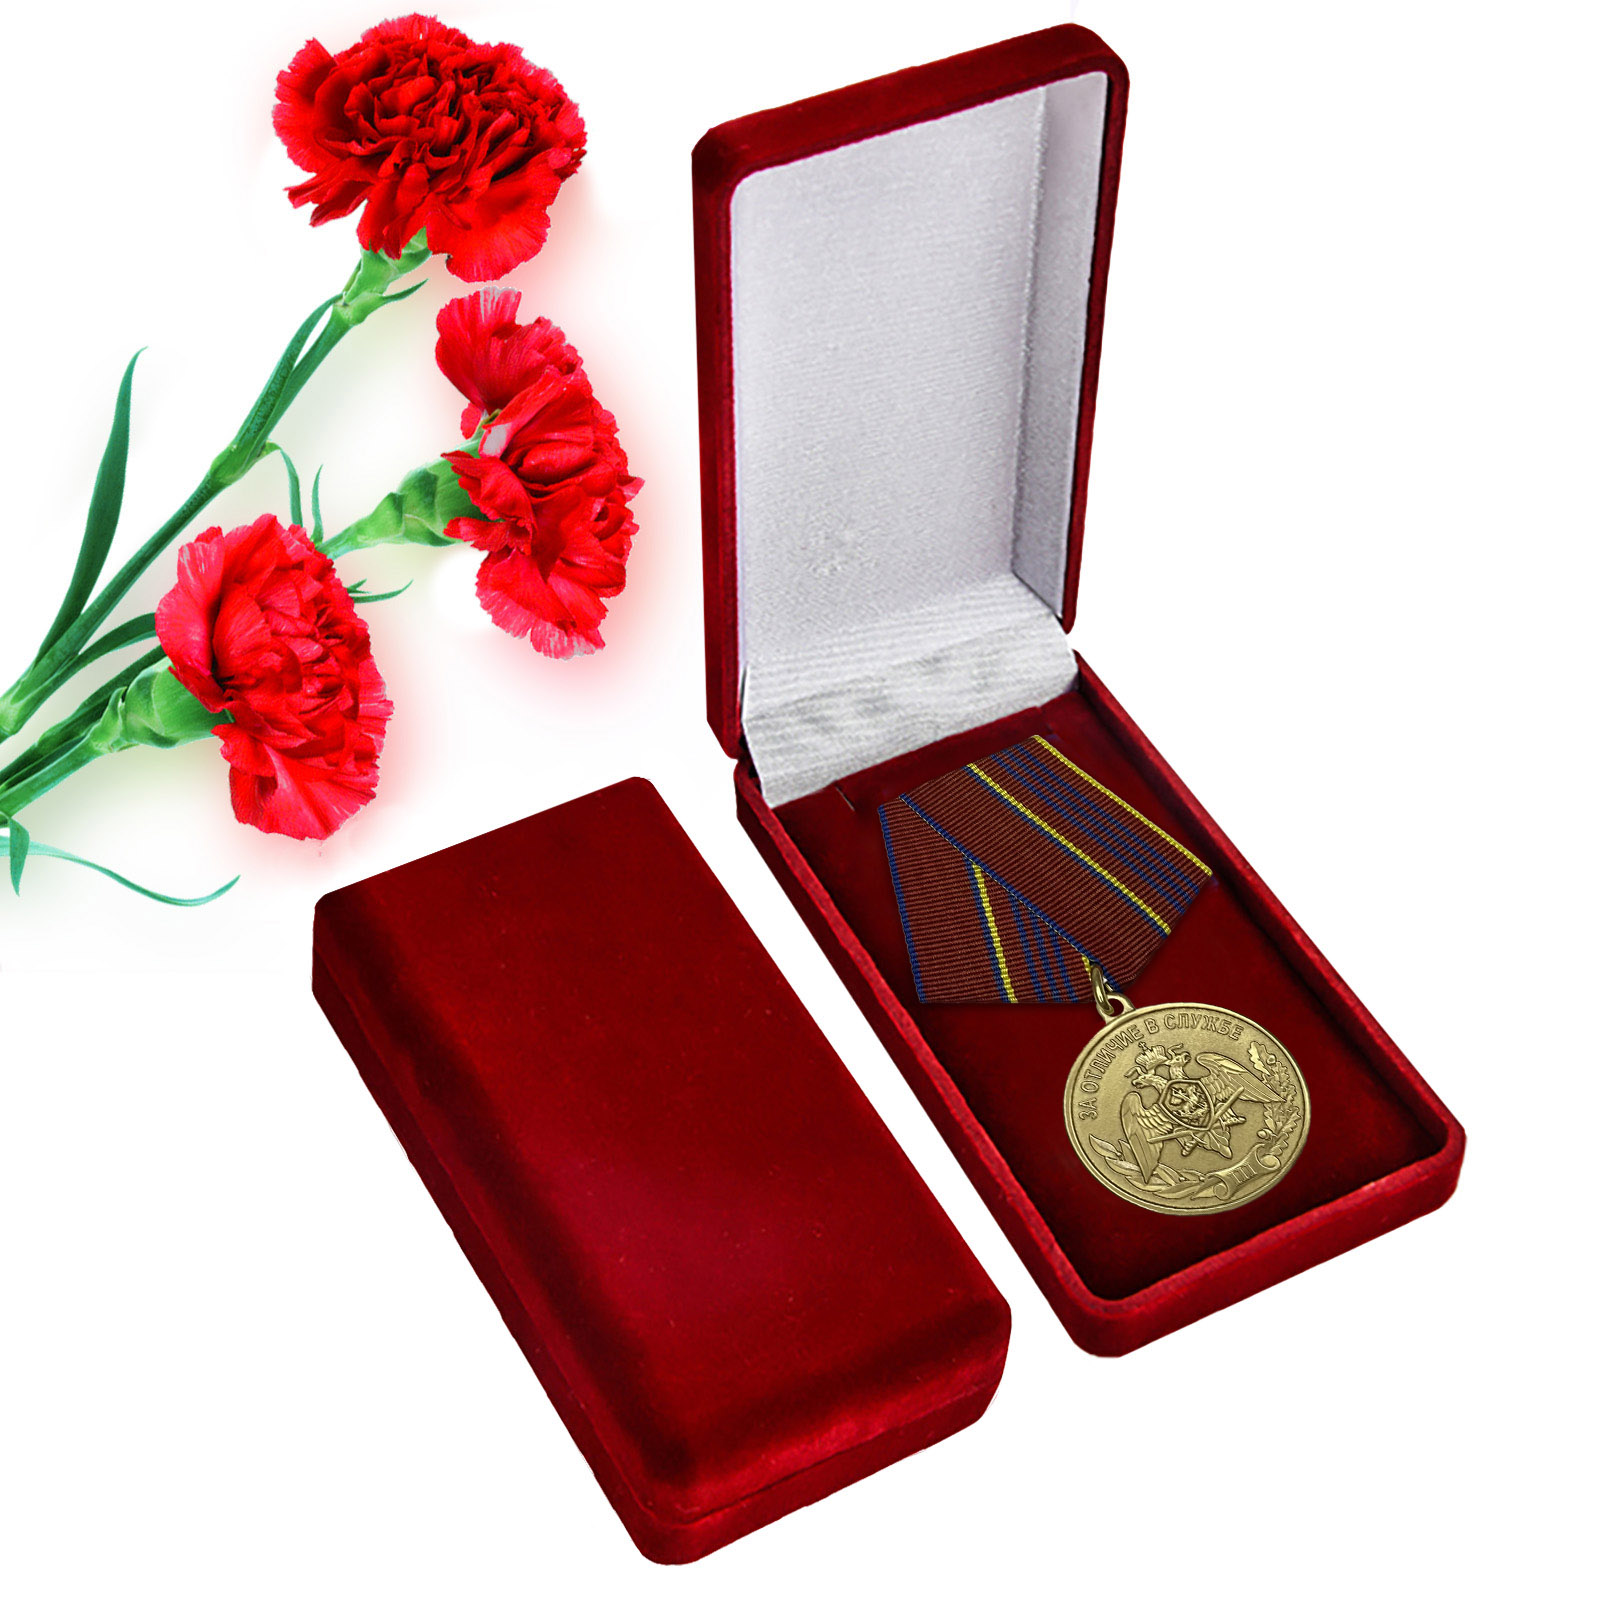 Медаль Росгвардии "За отличие в службе" 3-ей степени